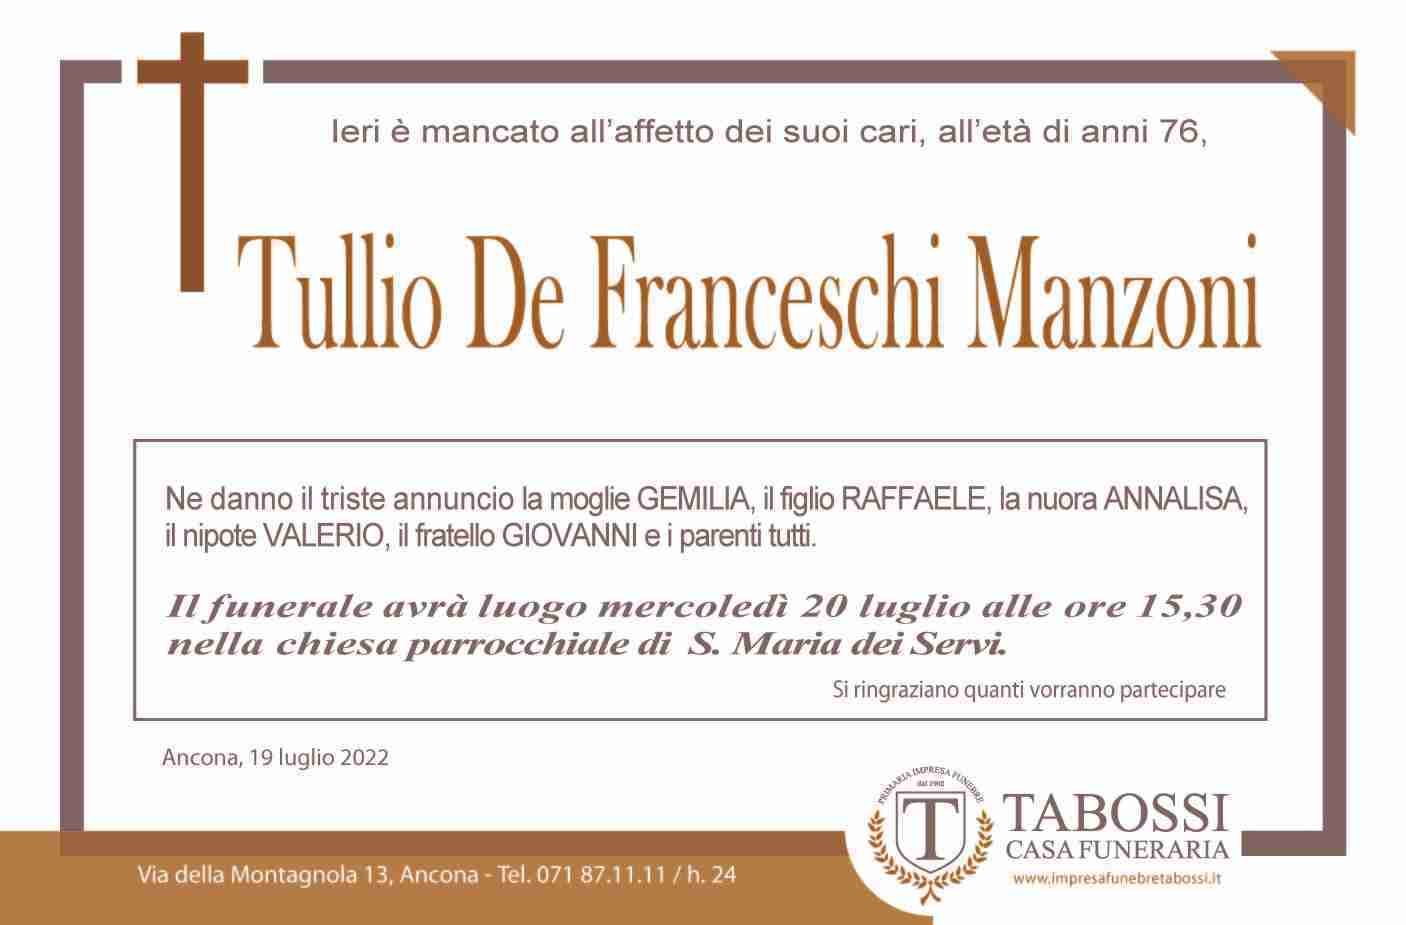 Tullio De Franceschi Manzoni